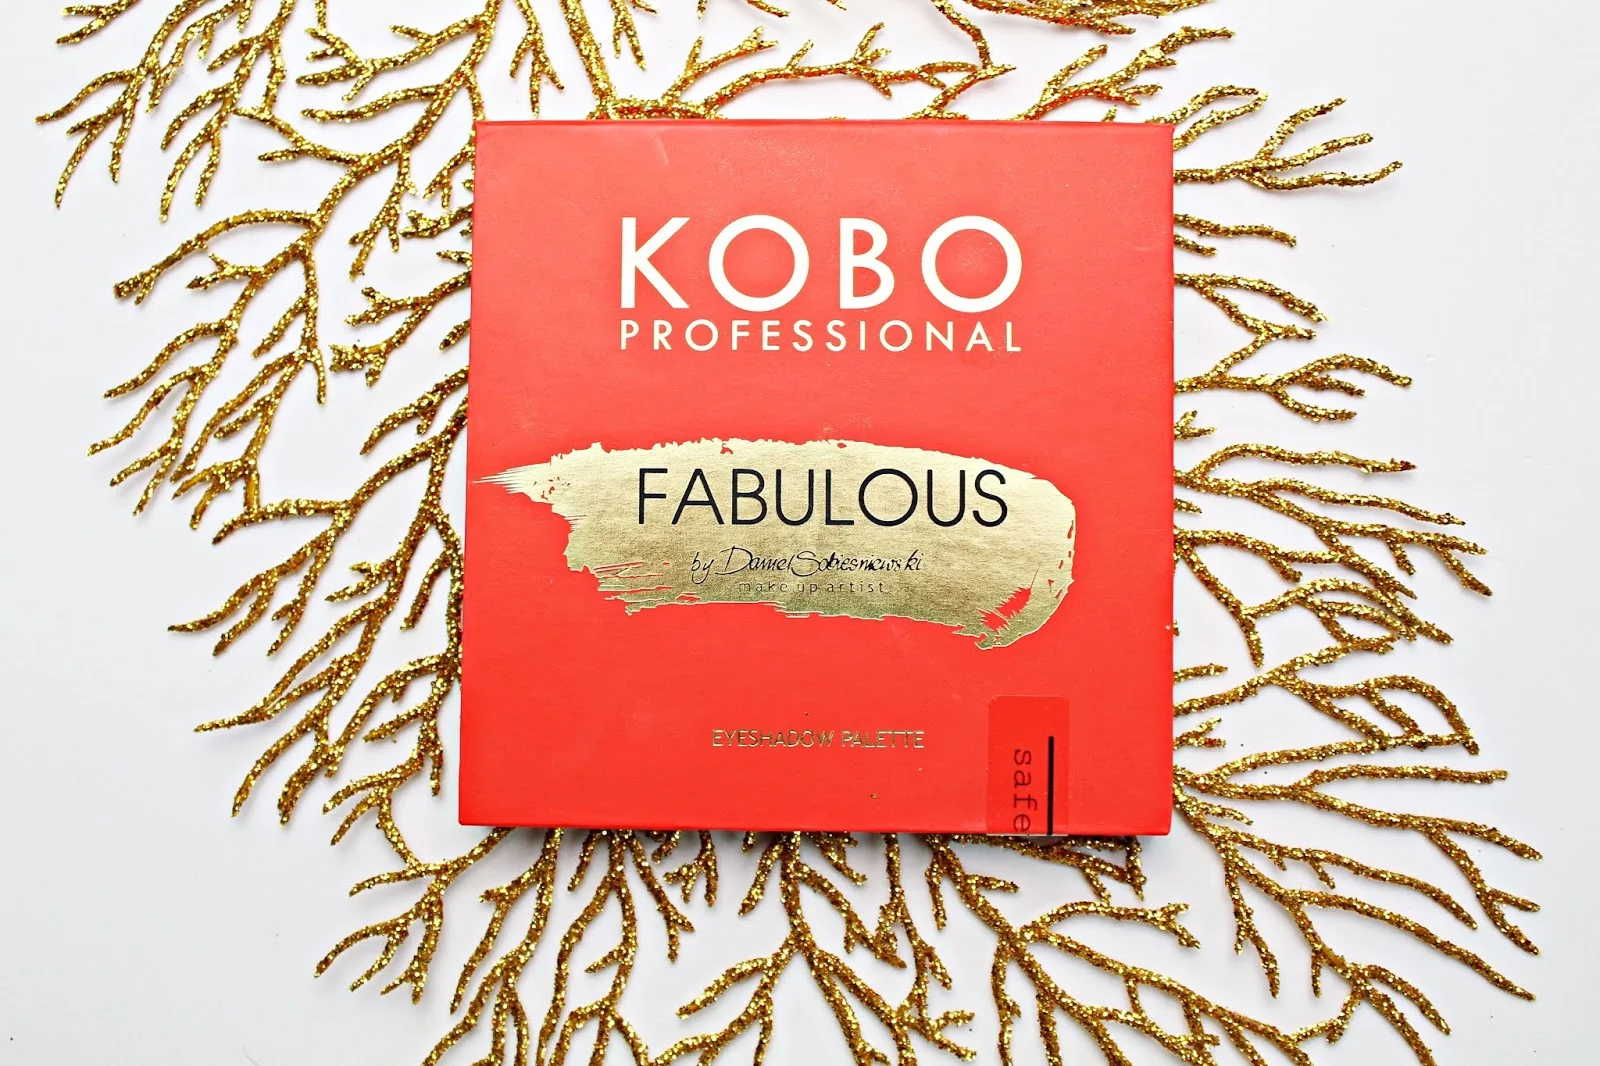 Kobo Professional FABULOUS by Daniel Sobieśniewski - paleta cieni z limitowanej edycji